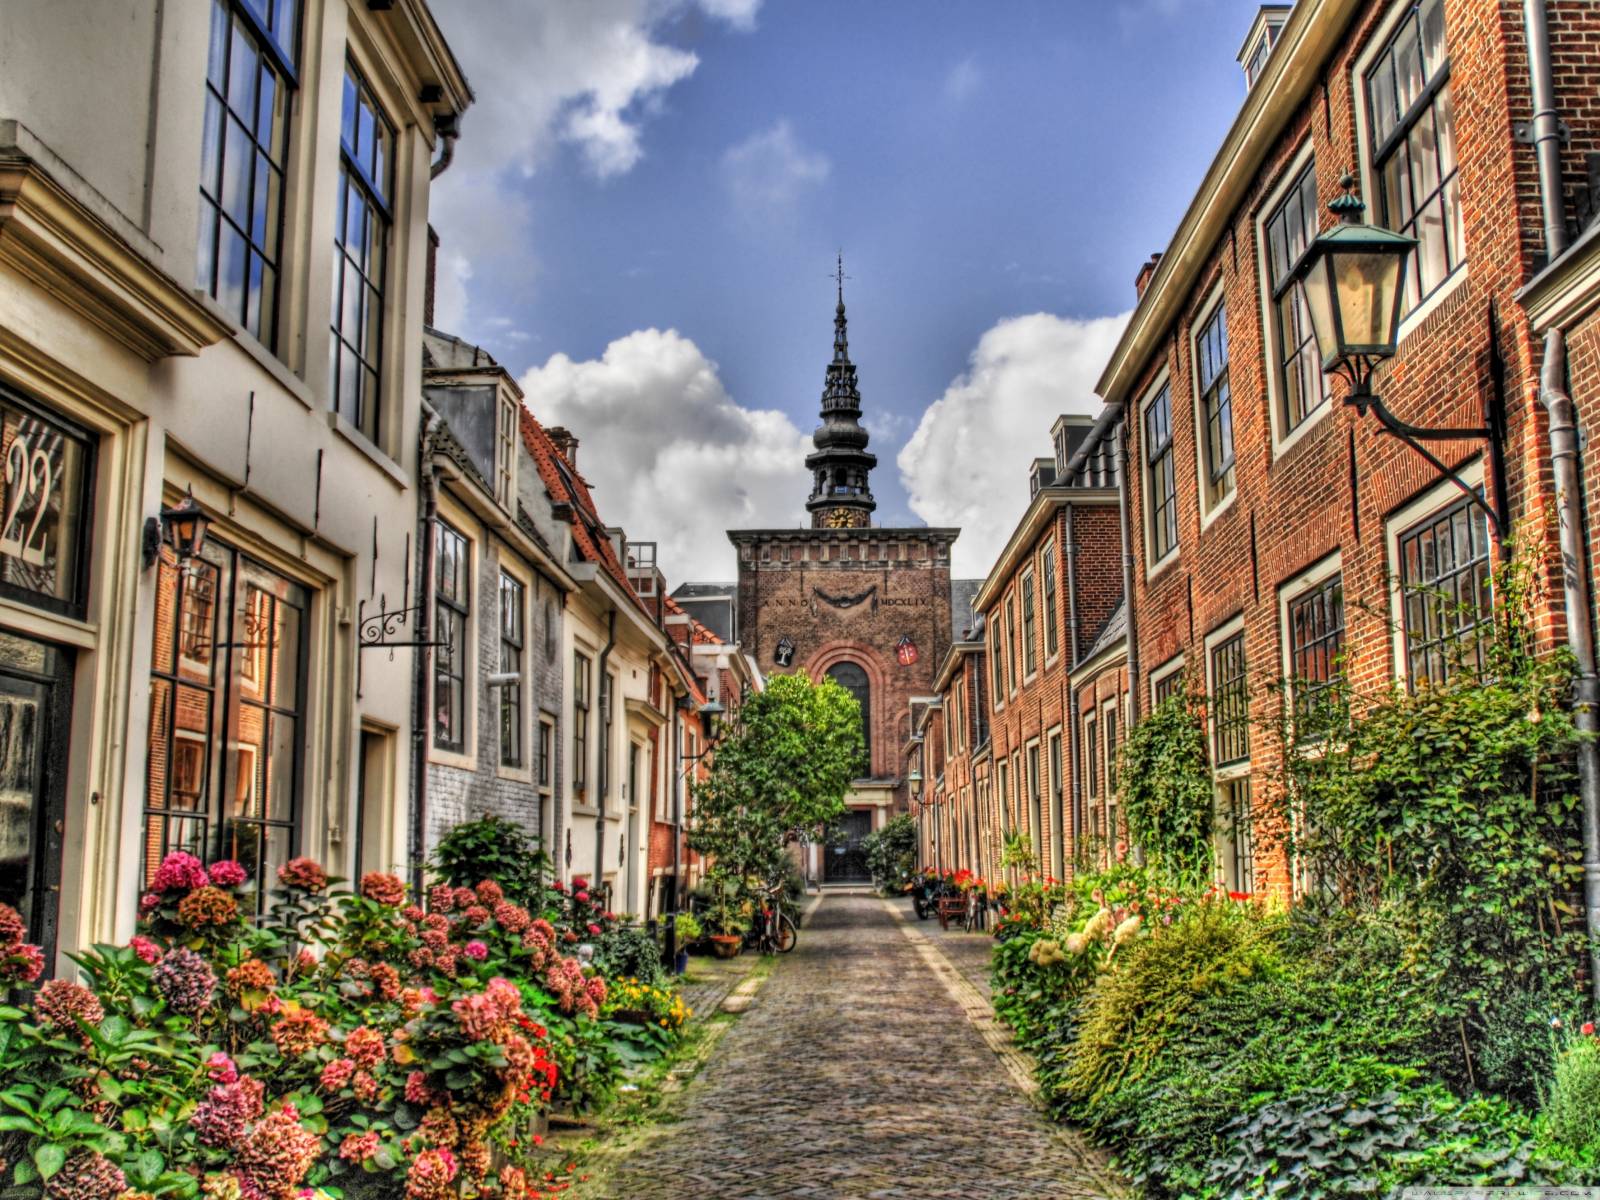 Улица в Голландии Города картинки, обои рабочий стол